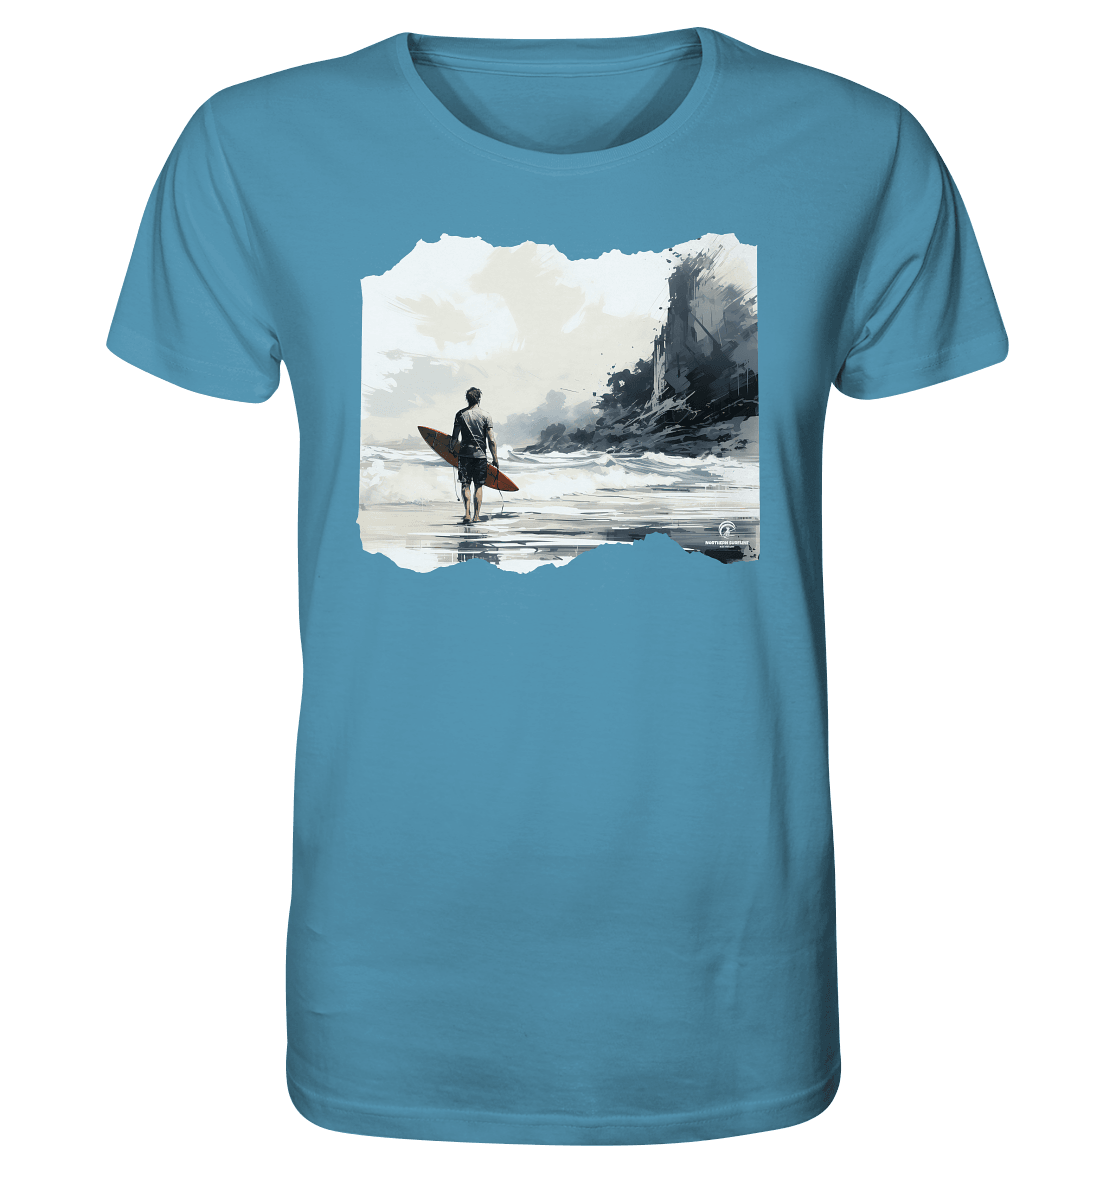 Northern Surfline - Organic Shirt - Snapshirts